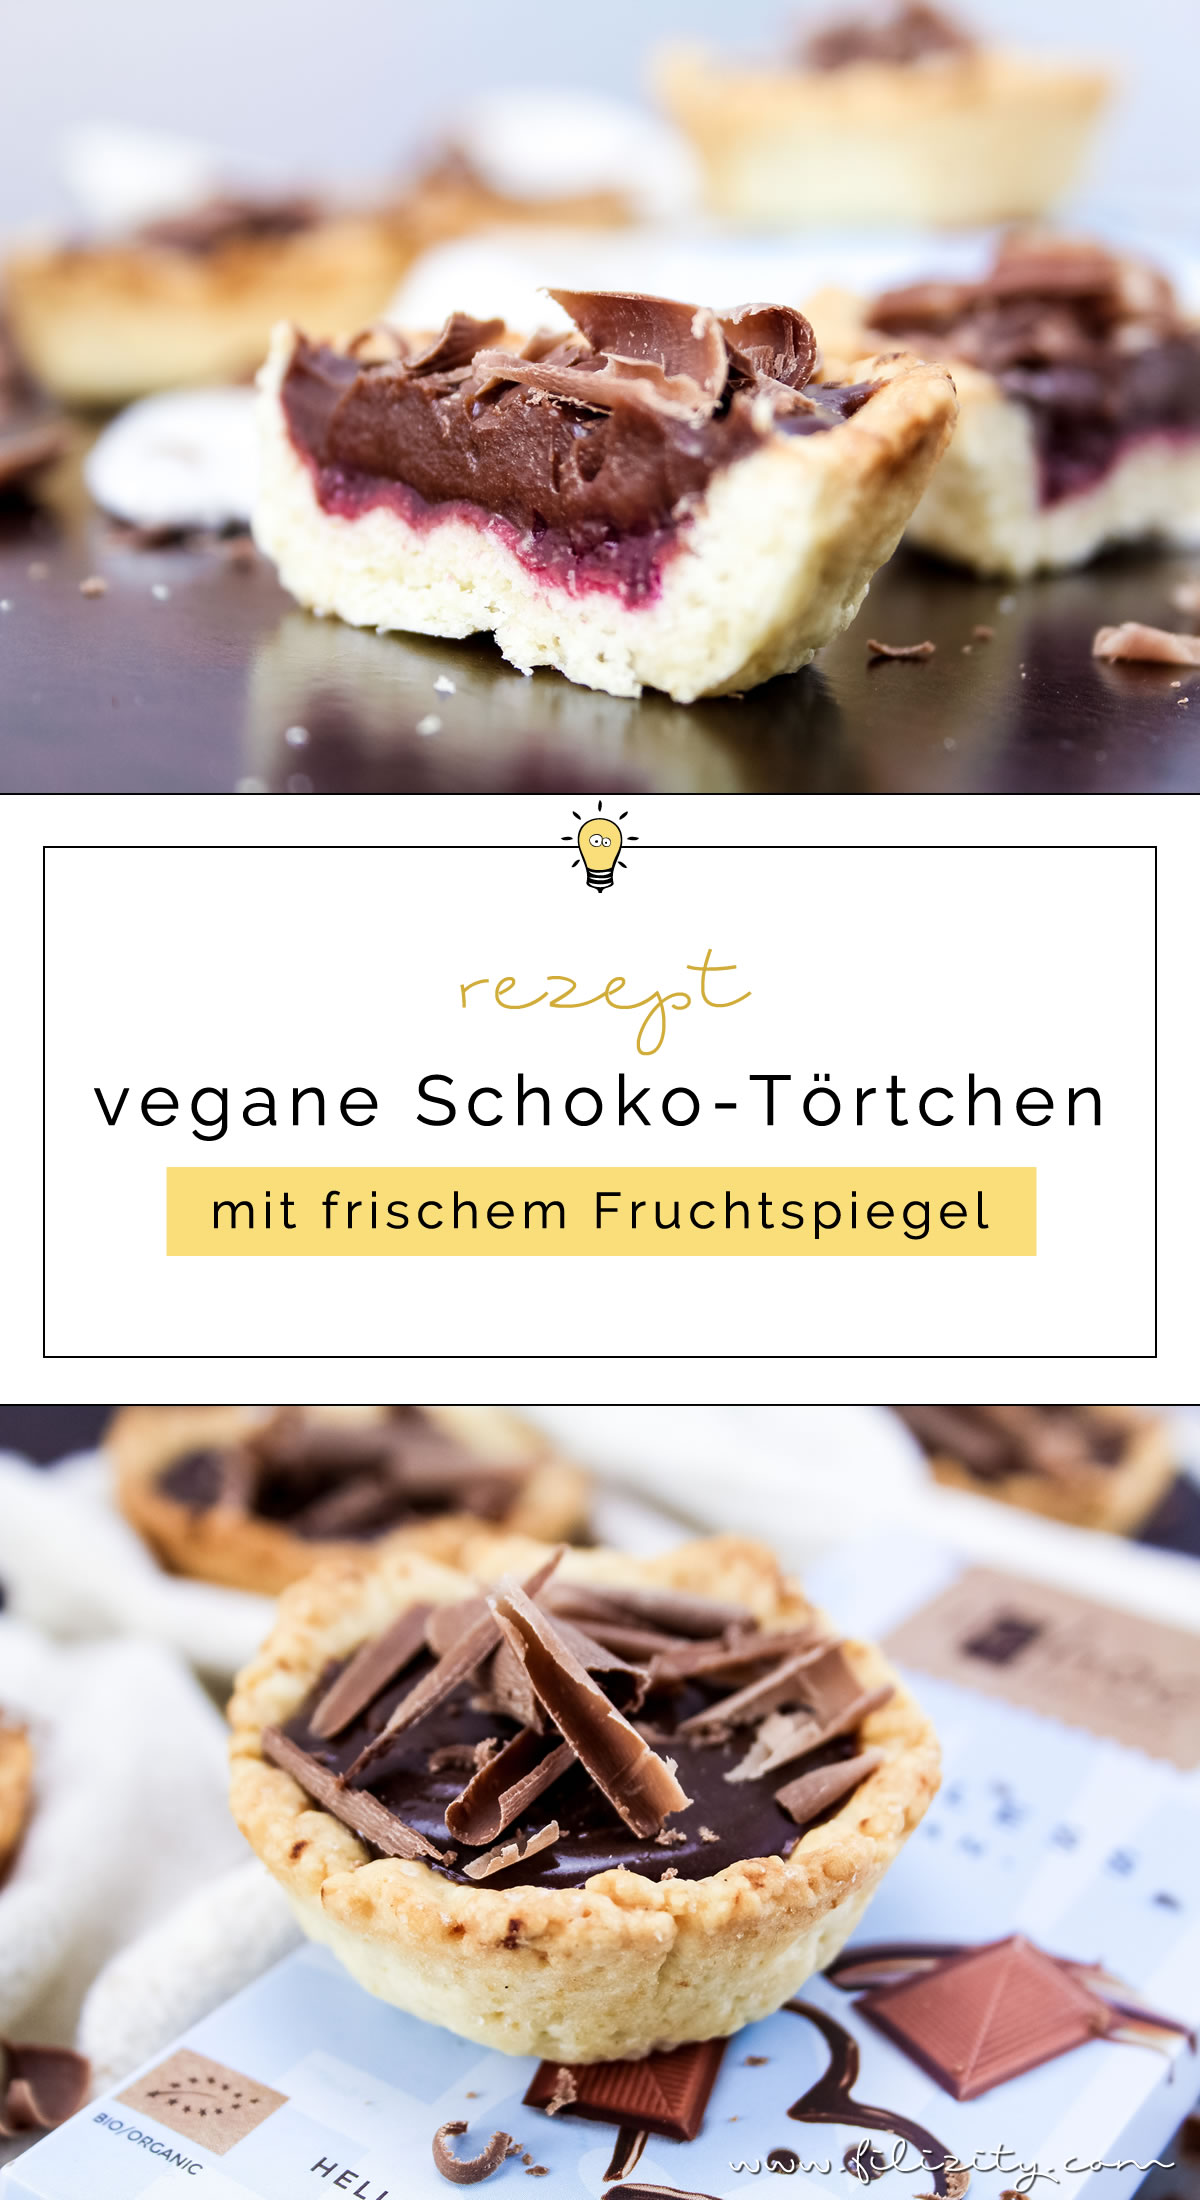 Vegane Schoko-Törtchen mit Brombeer-Fruchtspiegel | Filizity.com | Food-Blog aus dem Rheinland #vegan #dessert #schokolade #torte